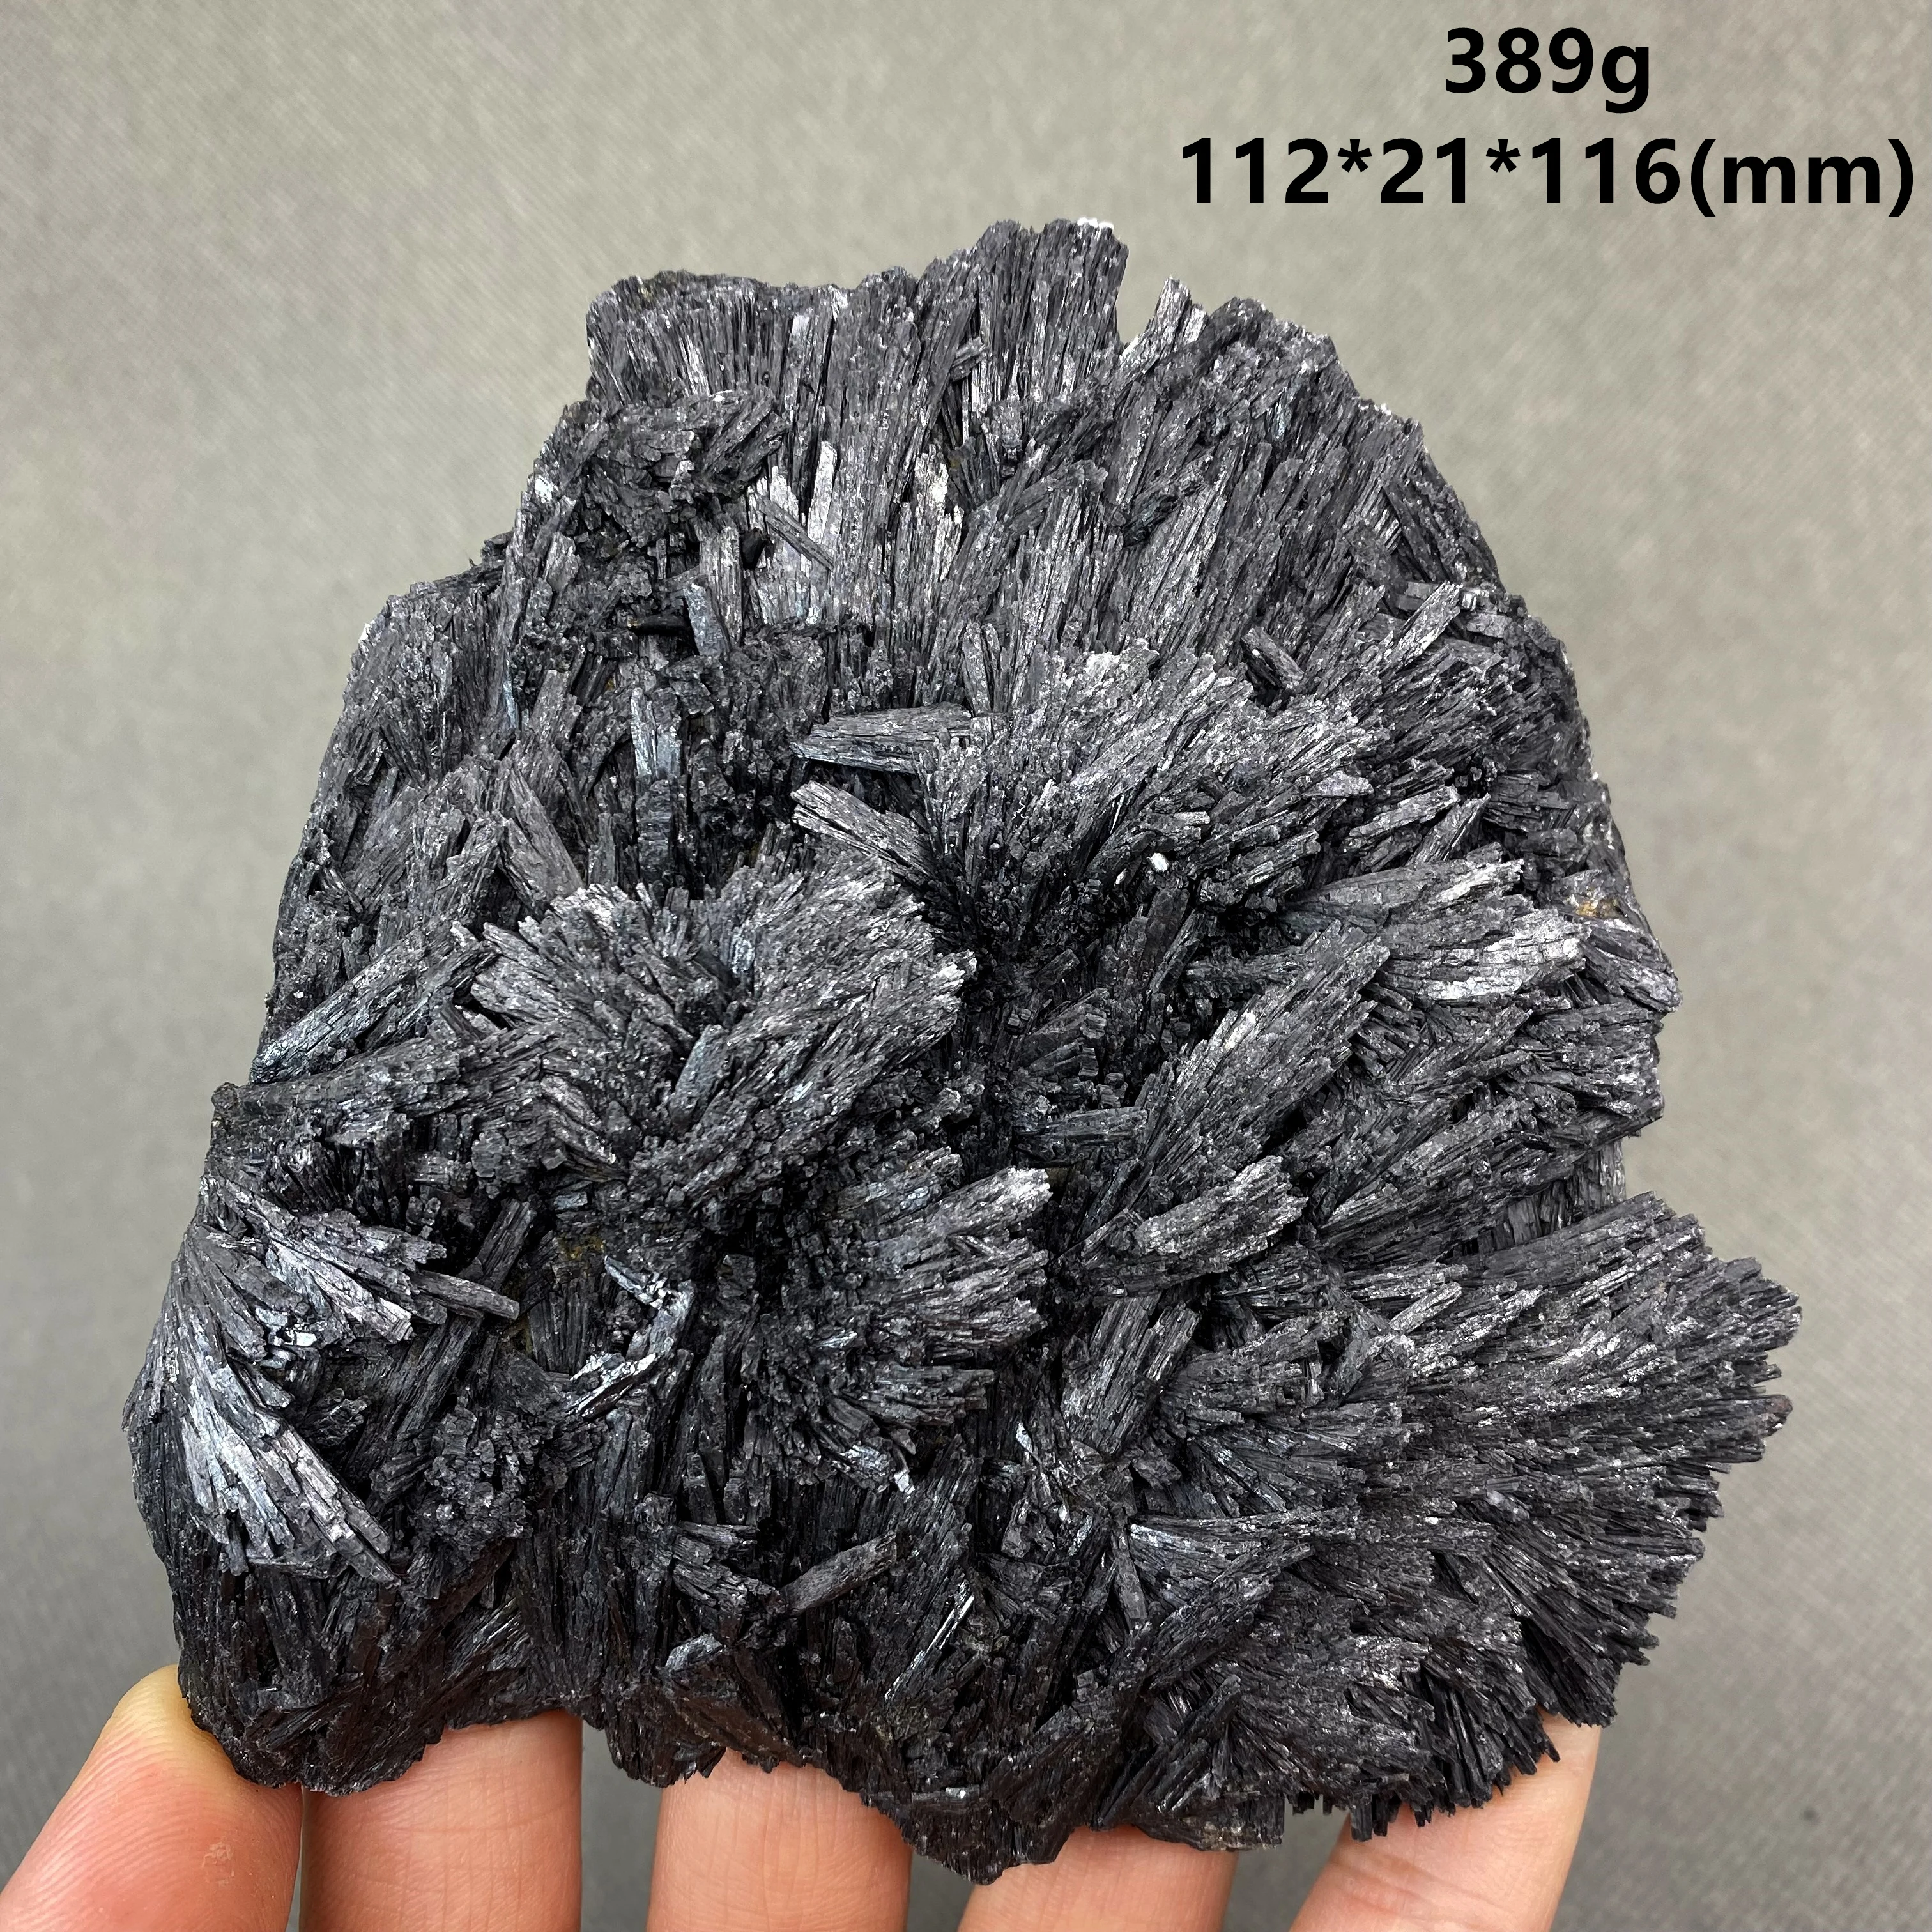 Turmalina negra brasileña 100% Natural en forma de aguja, especímenes minerales, piedras y cristales de cuarzo, piedra rugosa